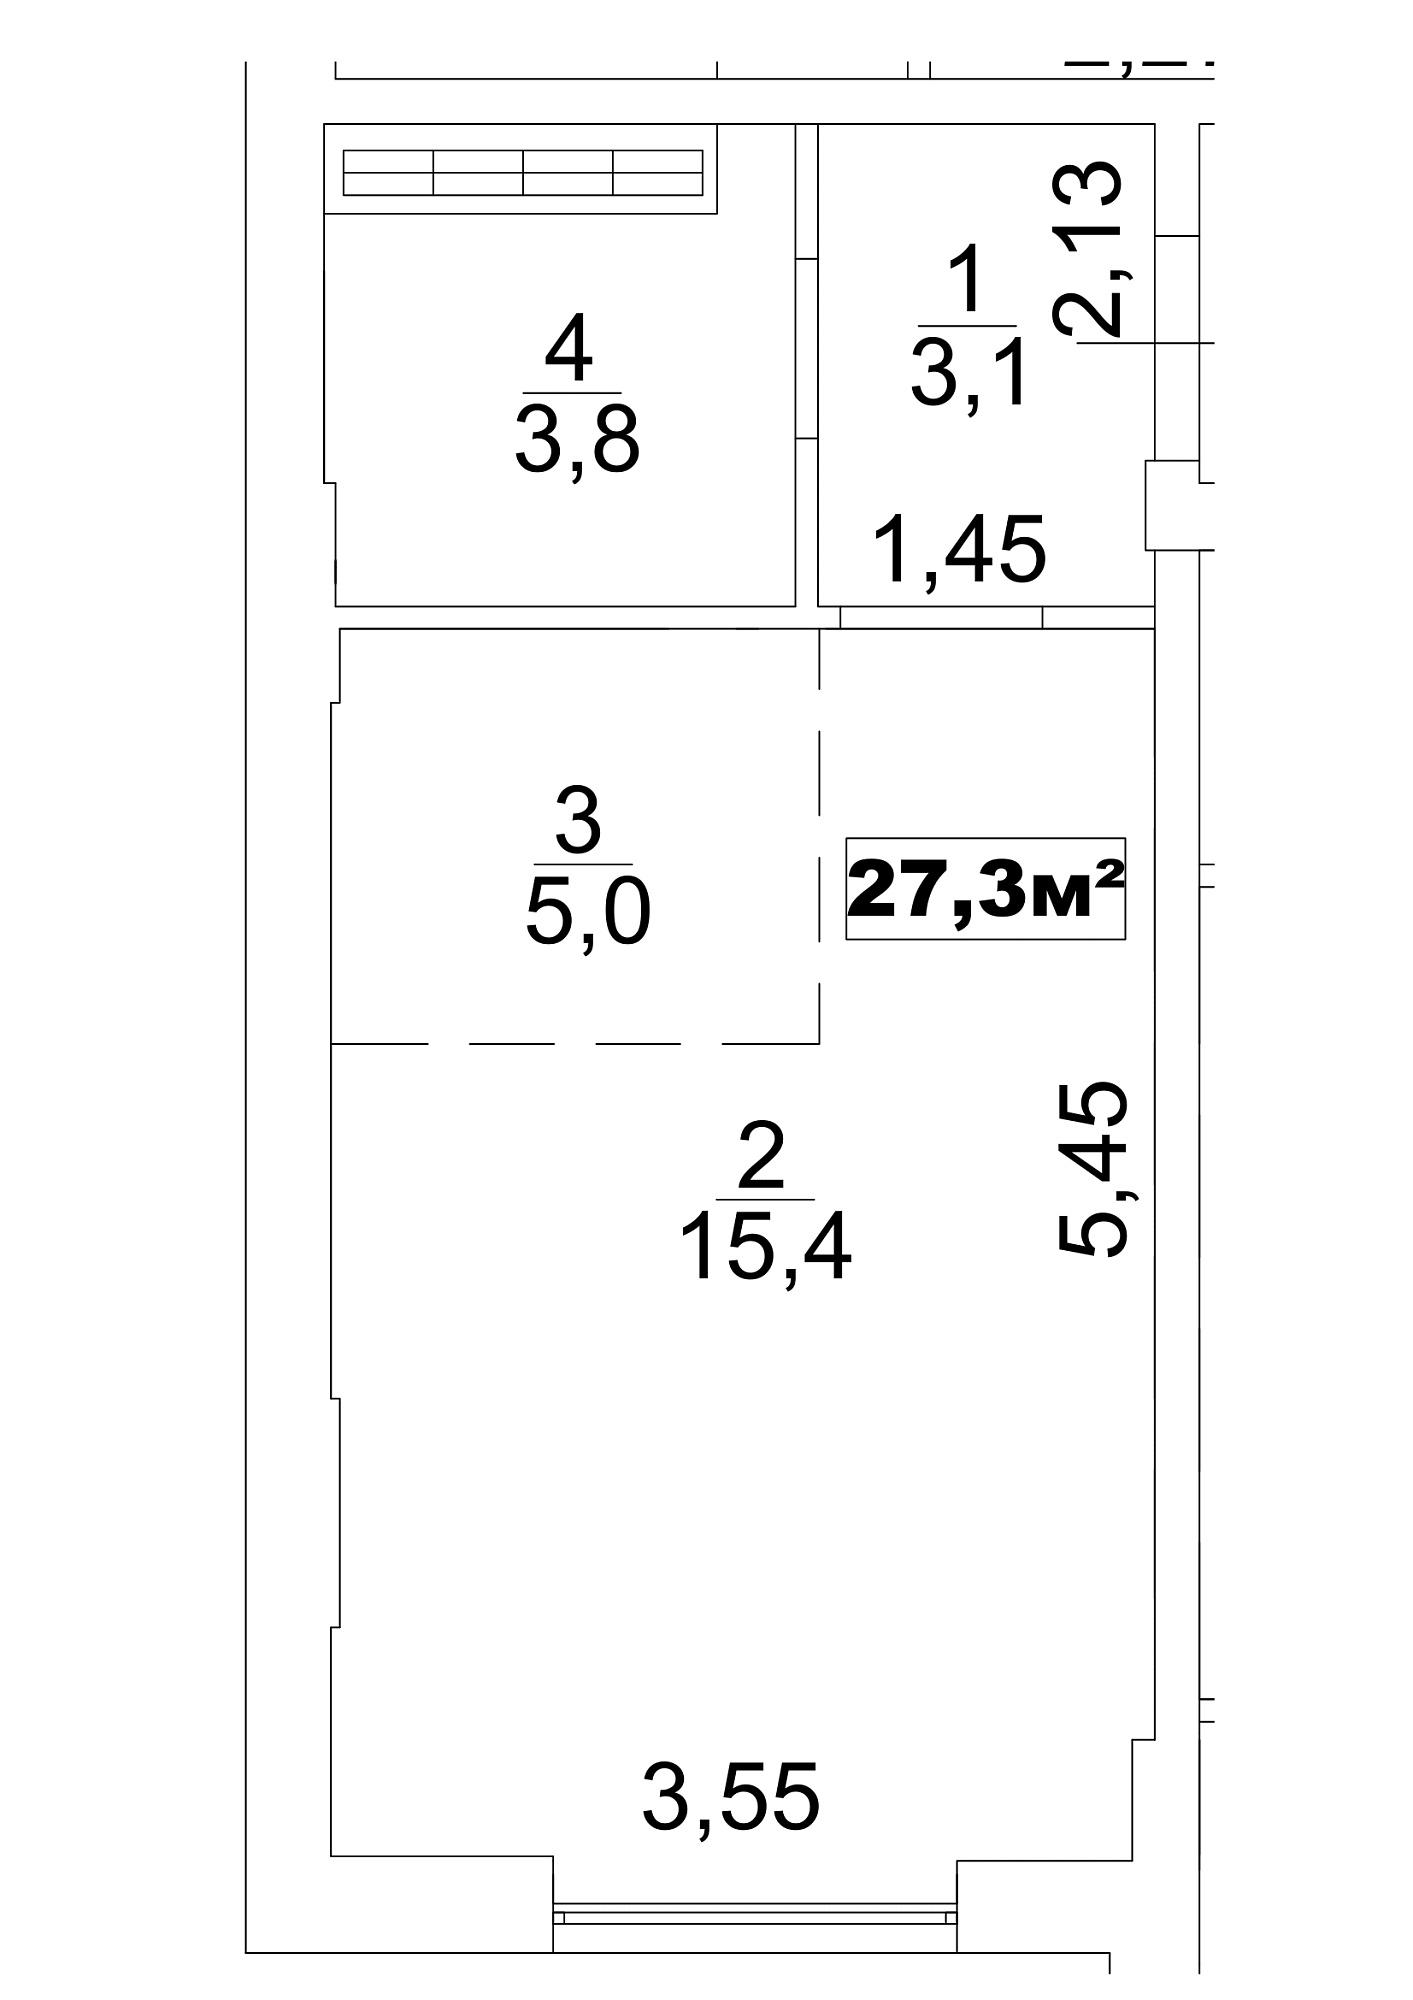 Планировка Smart-квартира площей 27.3м2, AB-13-10/0081а.